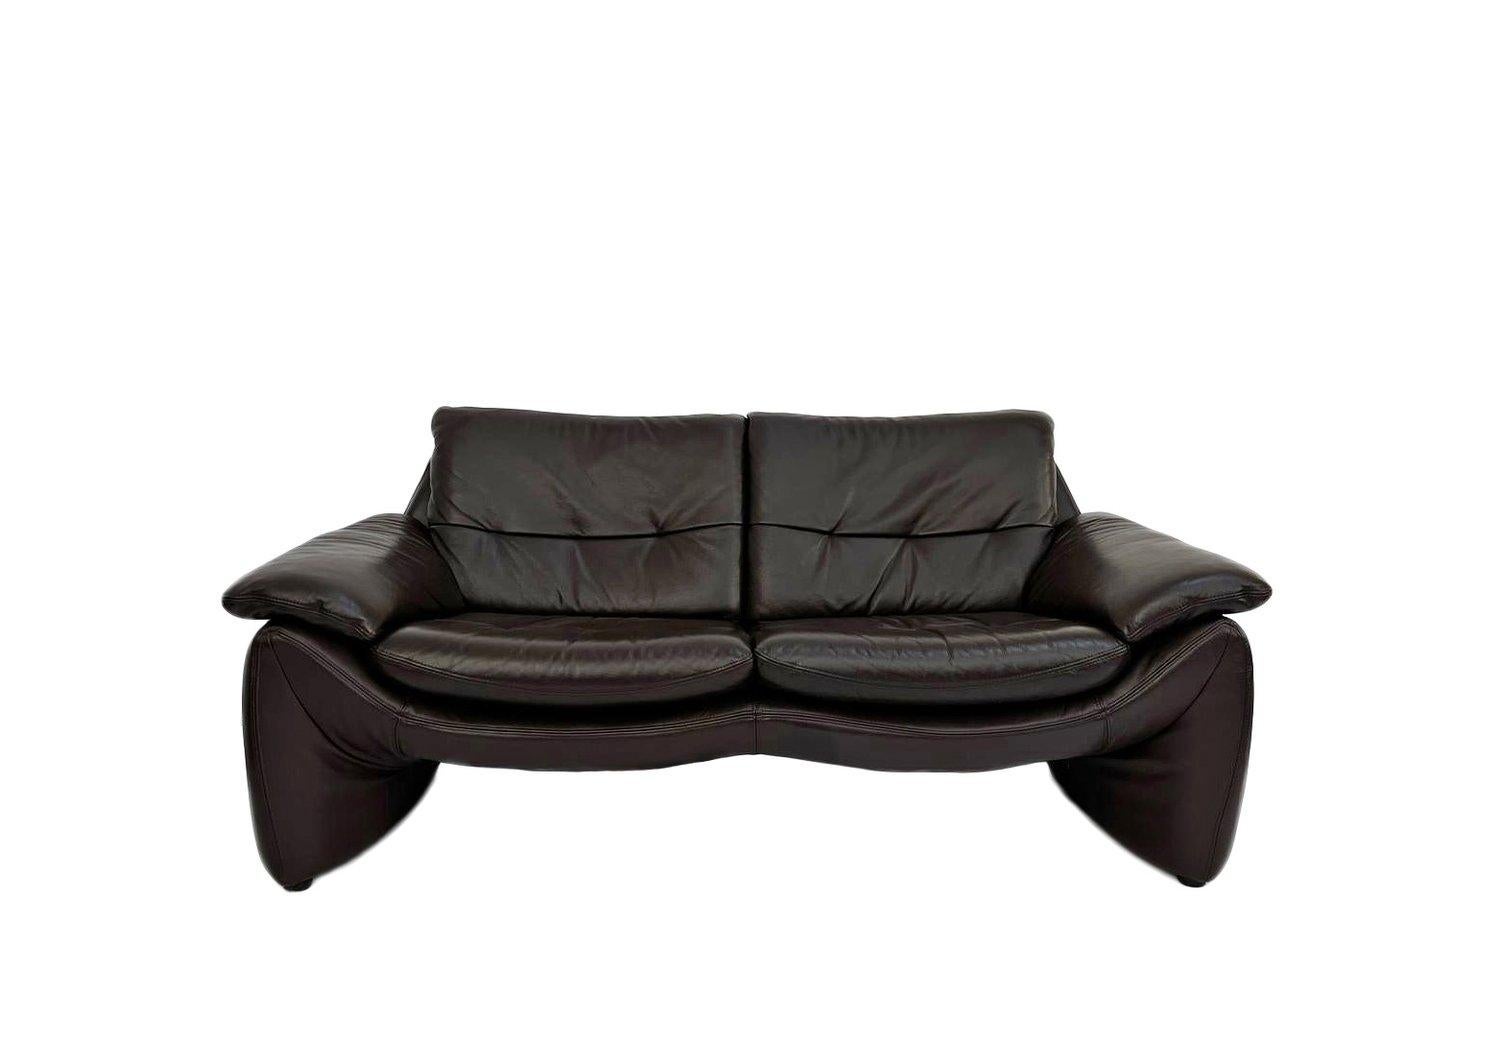 Ce magnifique canapé danois à deux places en cuir marron foncé constitue un ajout élégant à tout espace de vie ou de travail.

Le canapé est doté de larges assises et d'accoudoirs paddés pour un meilleur confort. Un meuble scandinave classique qui